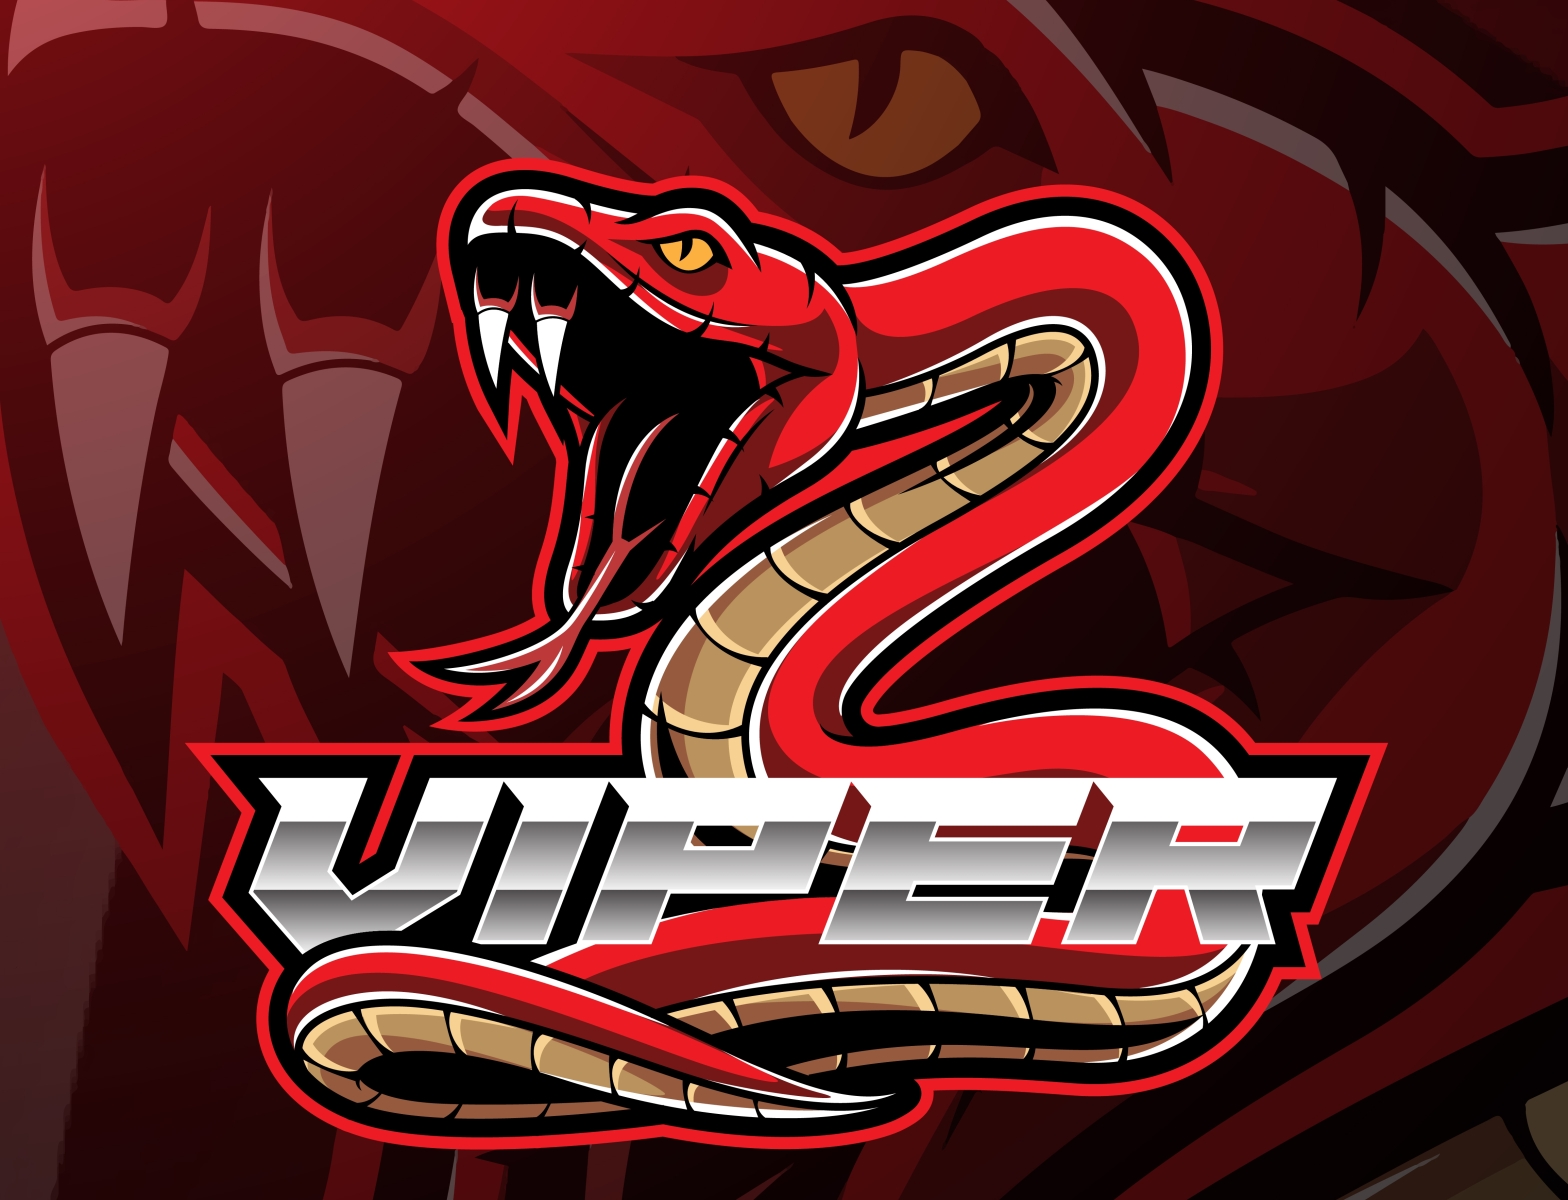 Viper snake mascot logo design by Visink on Dribbble